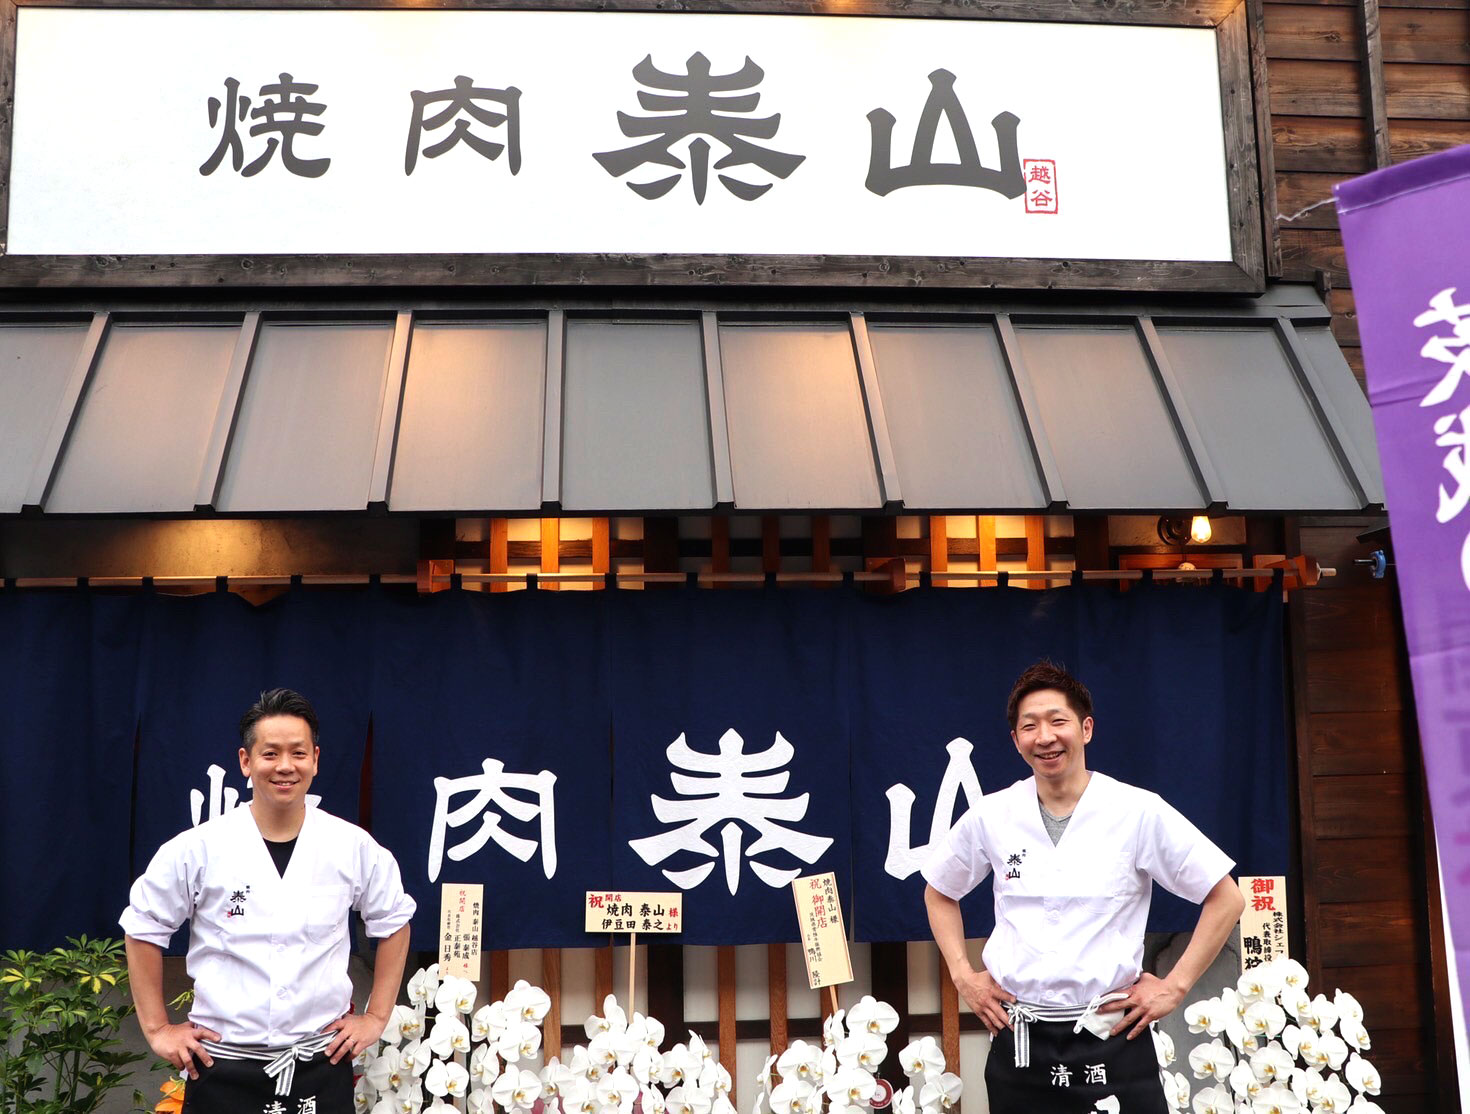 株式会社TJ TAKANO JAPANの直営店「焼肉 泰山 越谷店」がオープンいたしました